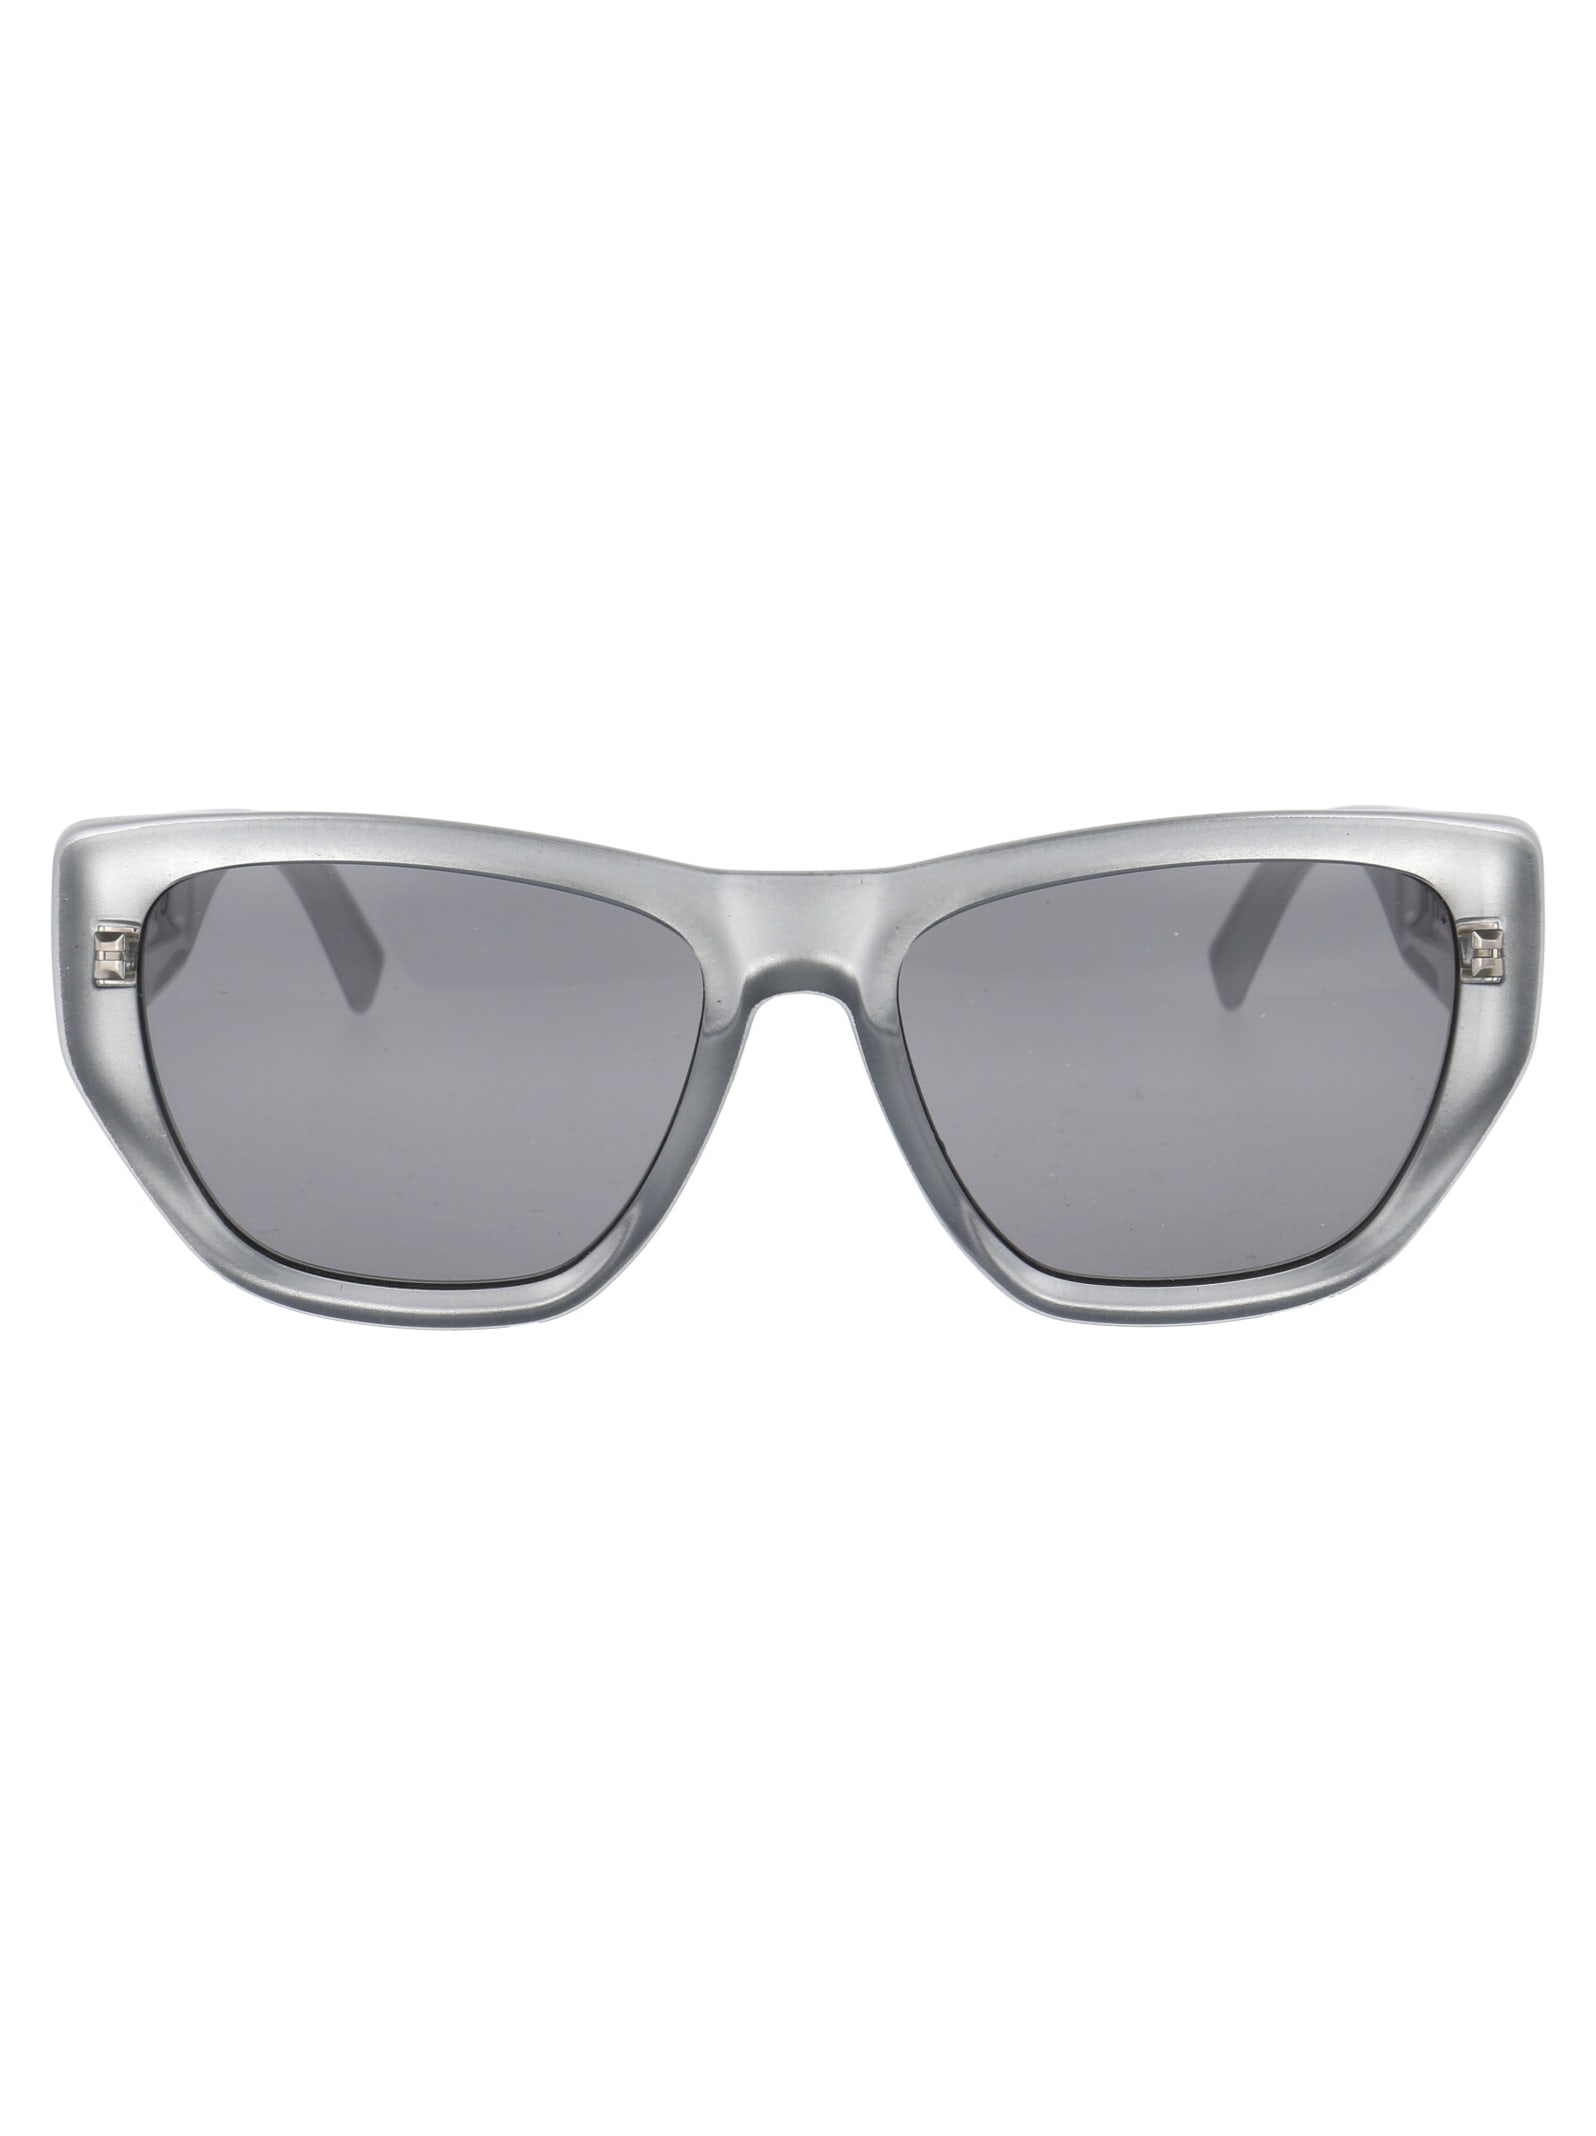 Givenchy Eyewear Gv 7202/s Sunglasses